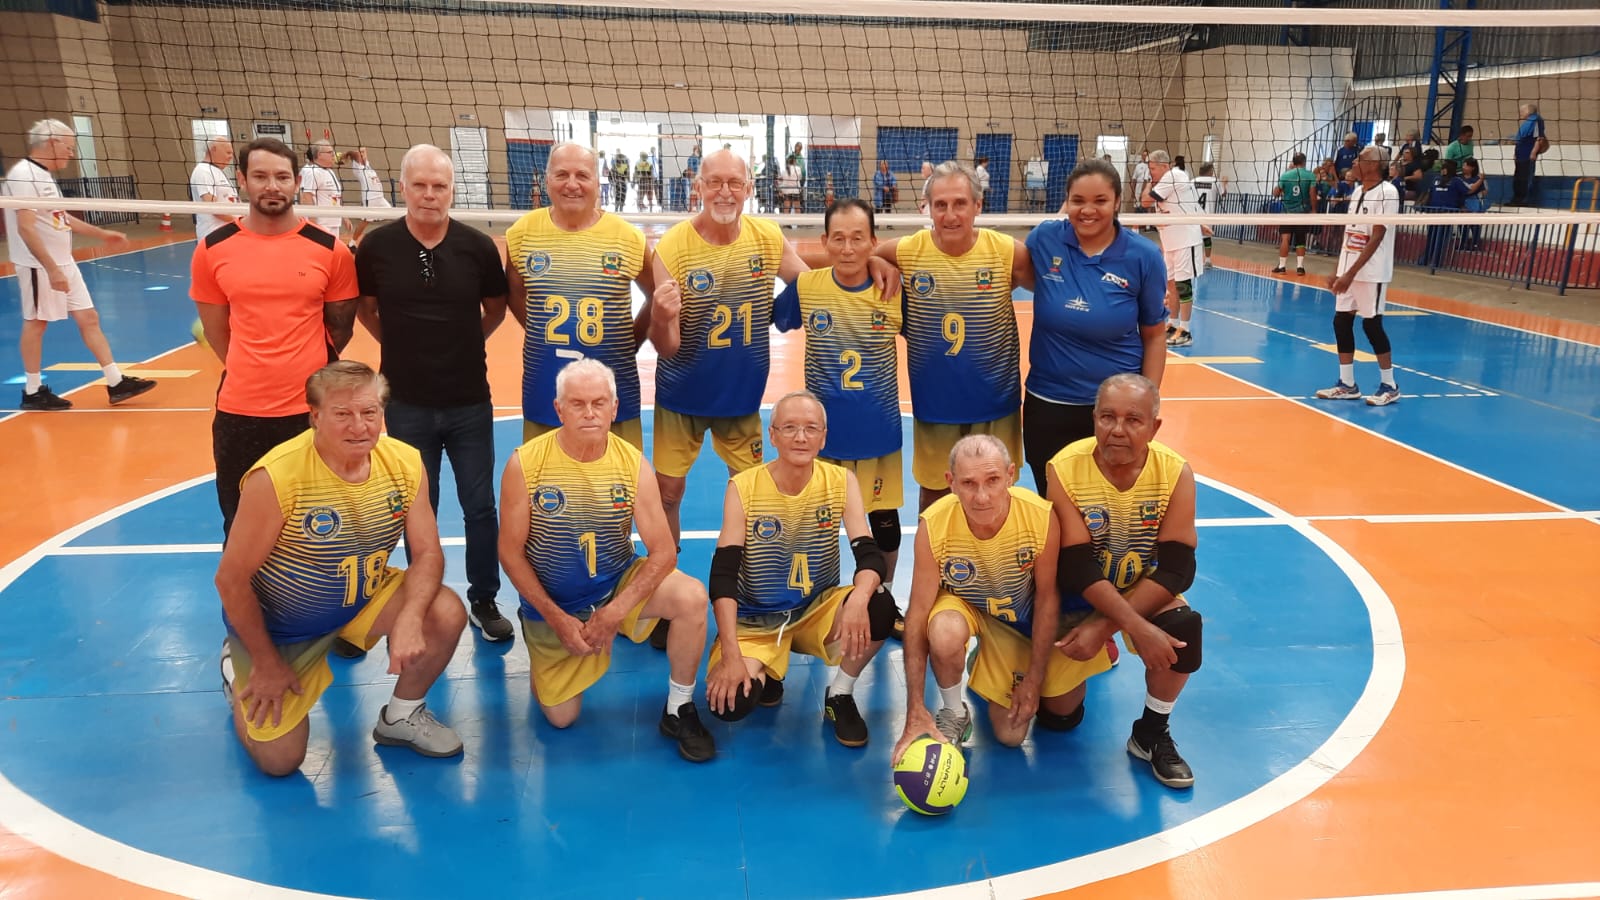 Voleibol: Divulgada tabela do Campeonato Paulista Adulto da Divisão  Especial • PortalR3 • Criando Opiniões